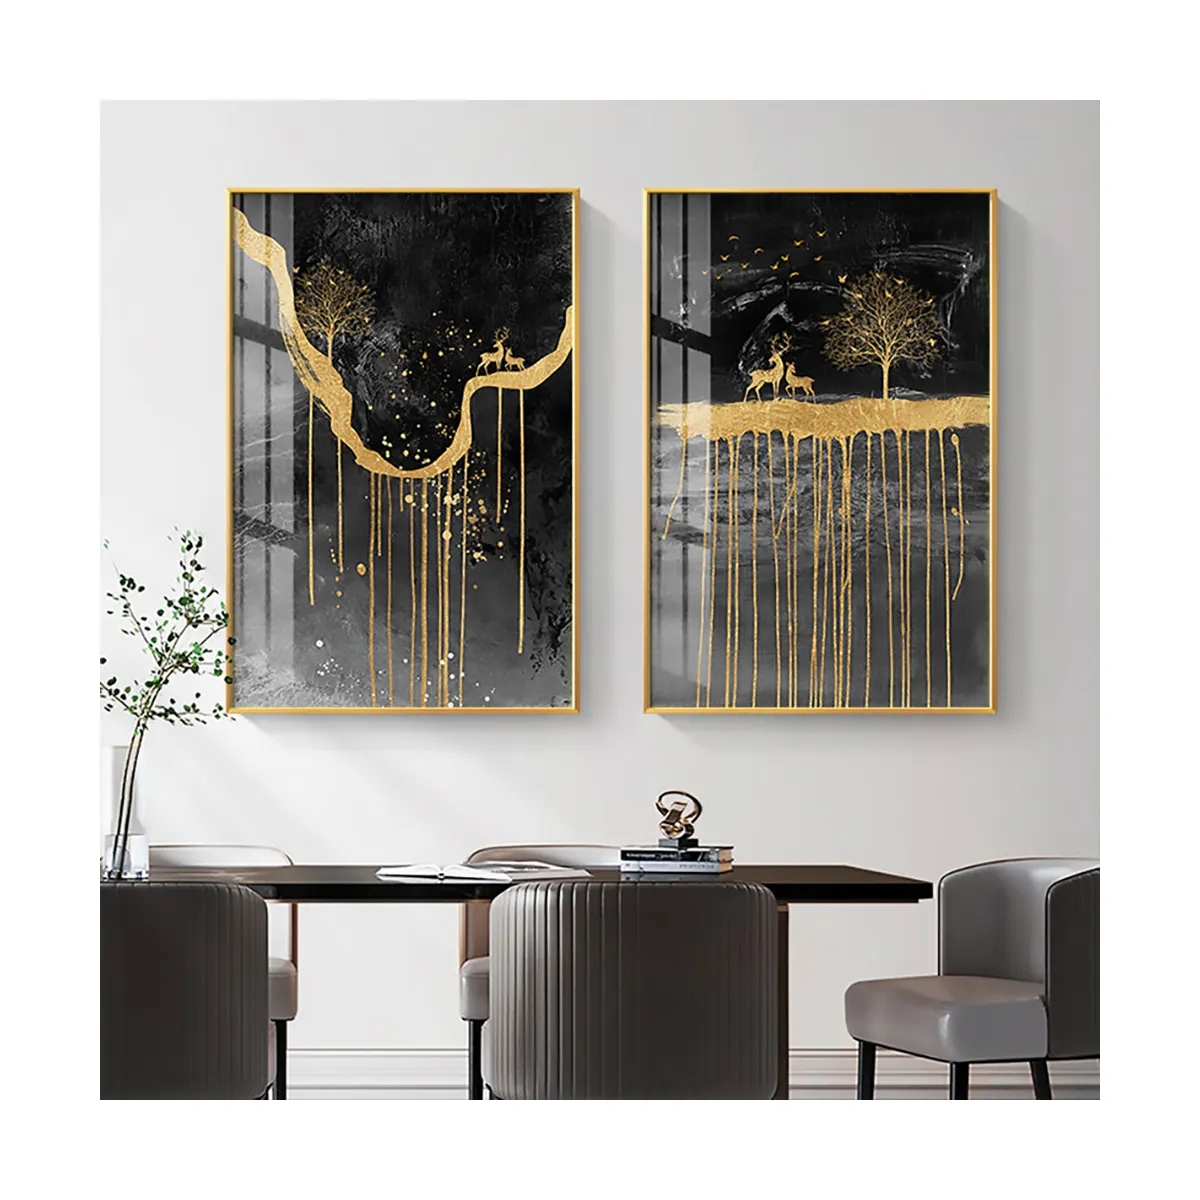 صور جدارية ذهبية وسوداء مطبوعة بأشكال الغزلان والمناظر الطبيعية الجميلة صور تجريدية لغرف المعيشة المنزلية الفاخرة ديكور للمكاتب